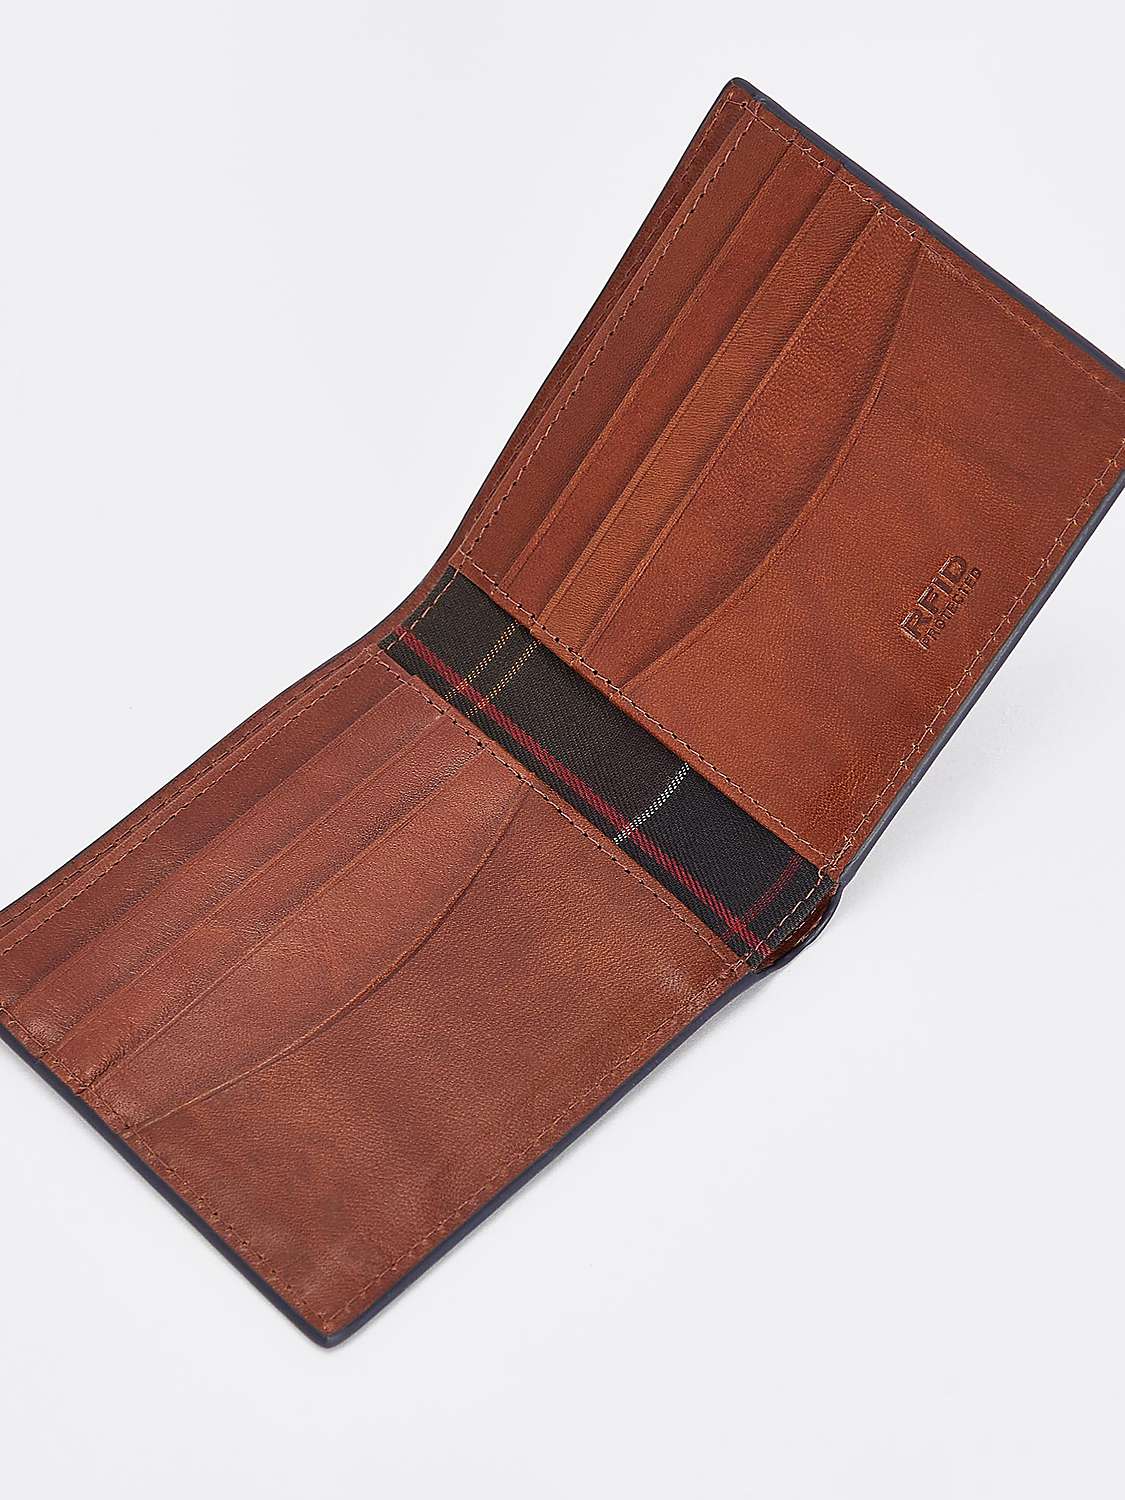 Buy Barbour Torridon Leather Wallet, Cognac Online at johnlewis.com